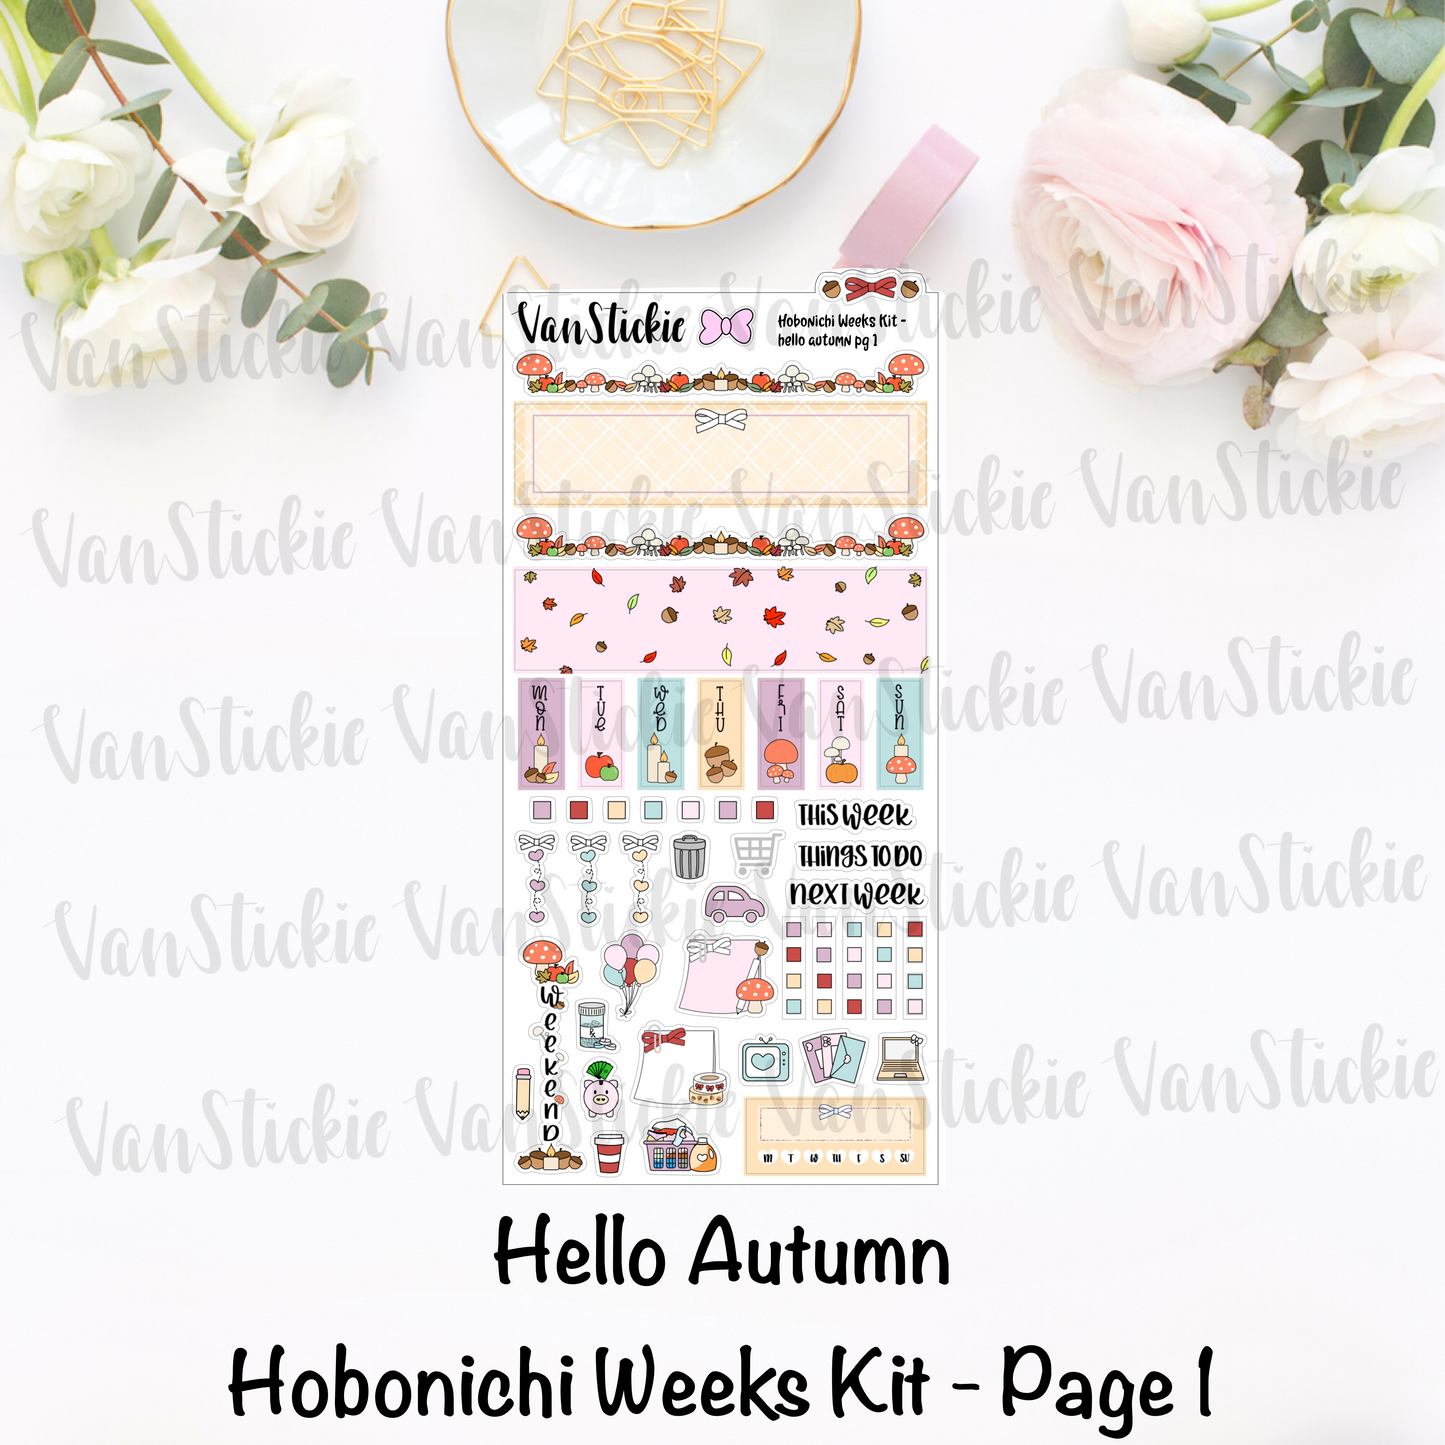 Hobonichi Weeks Kit - "Hello Autumn"